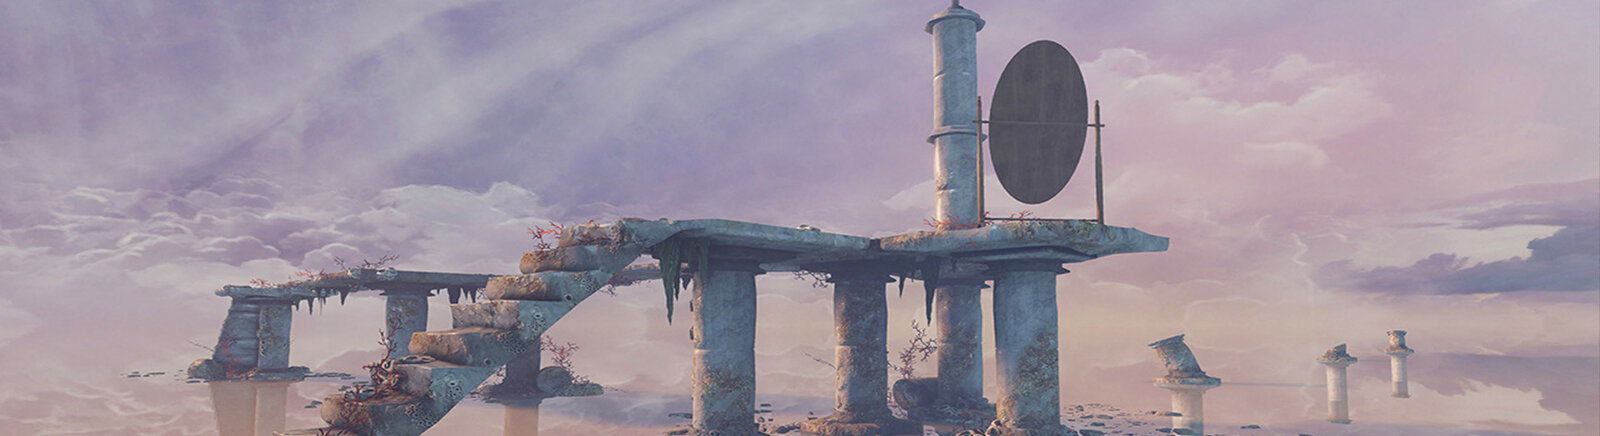 MIND: Path to Thalamus - Metacritic